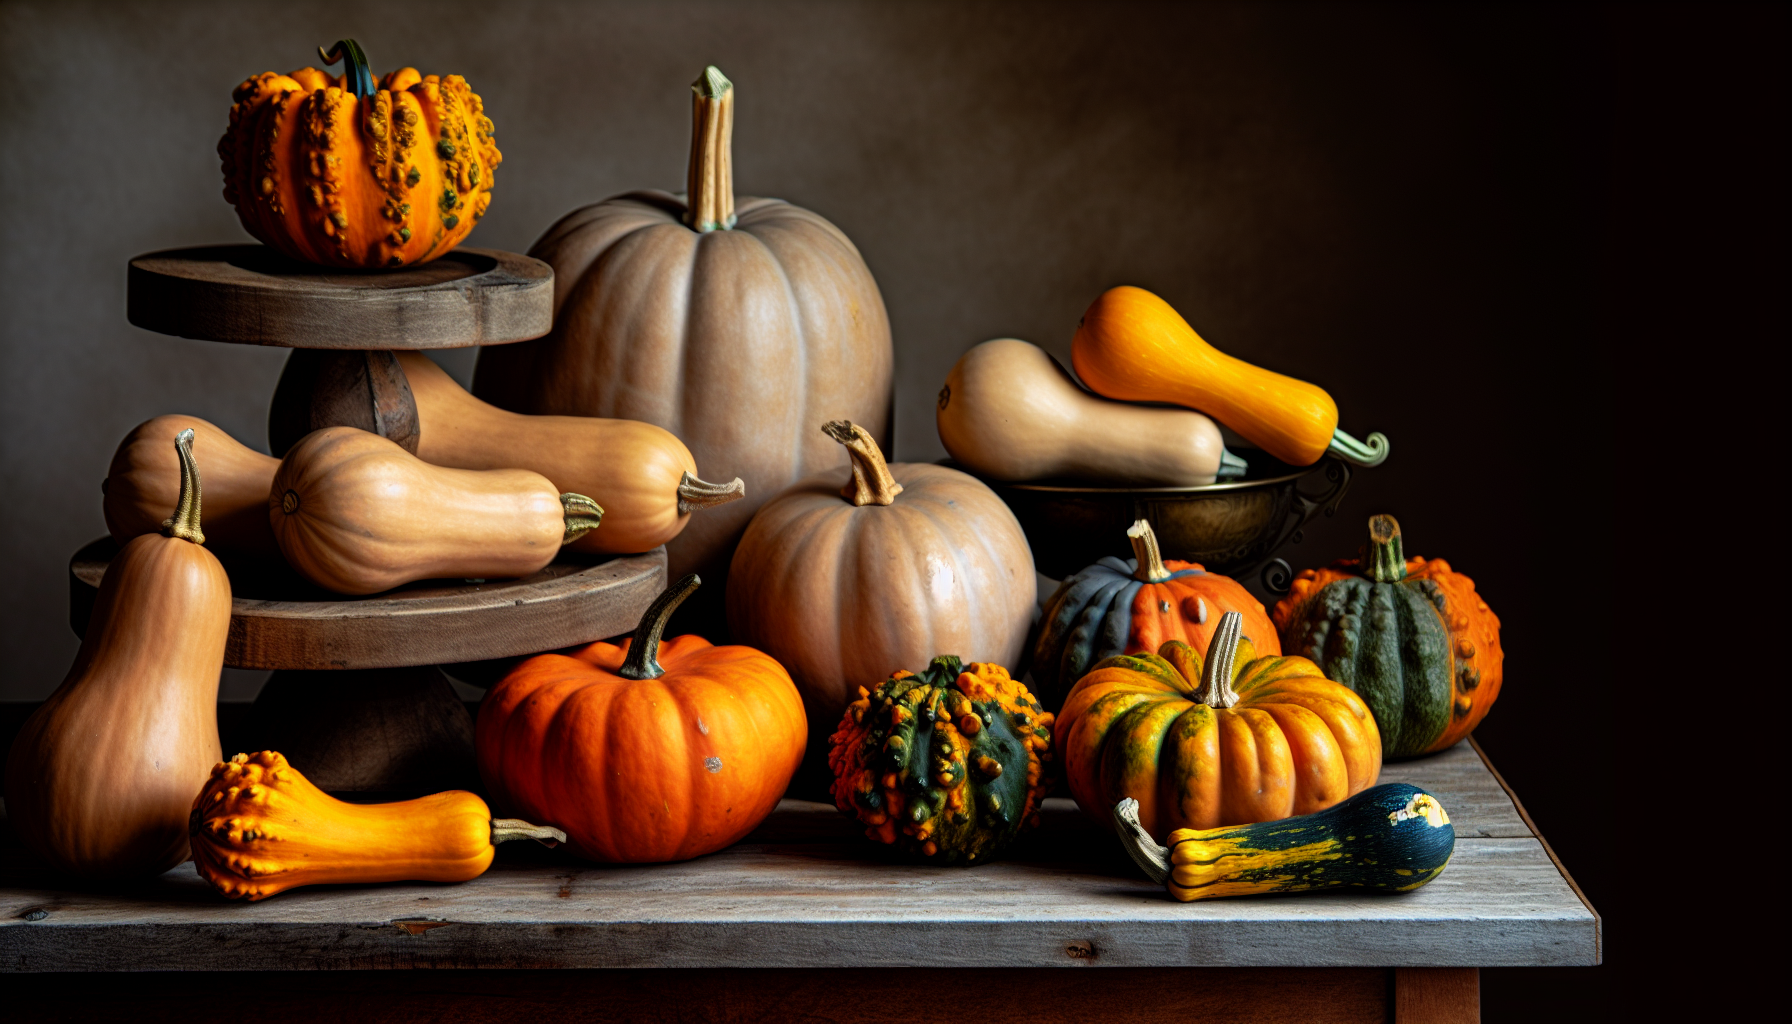 Variety of pumpkins and squash